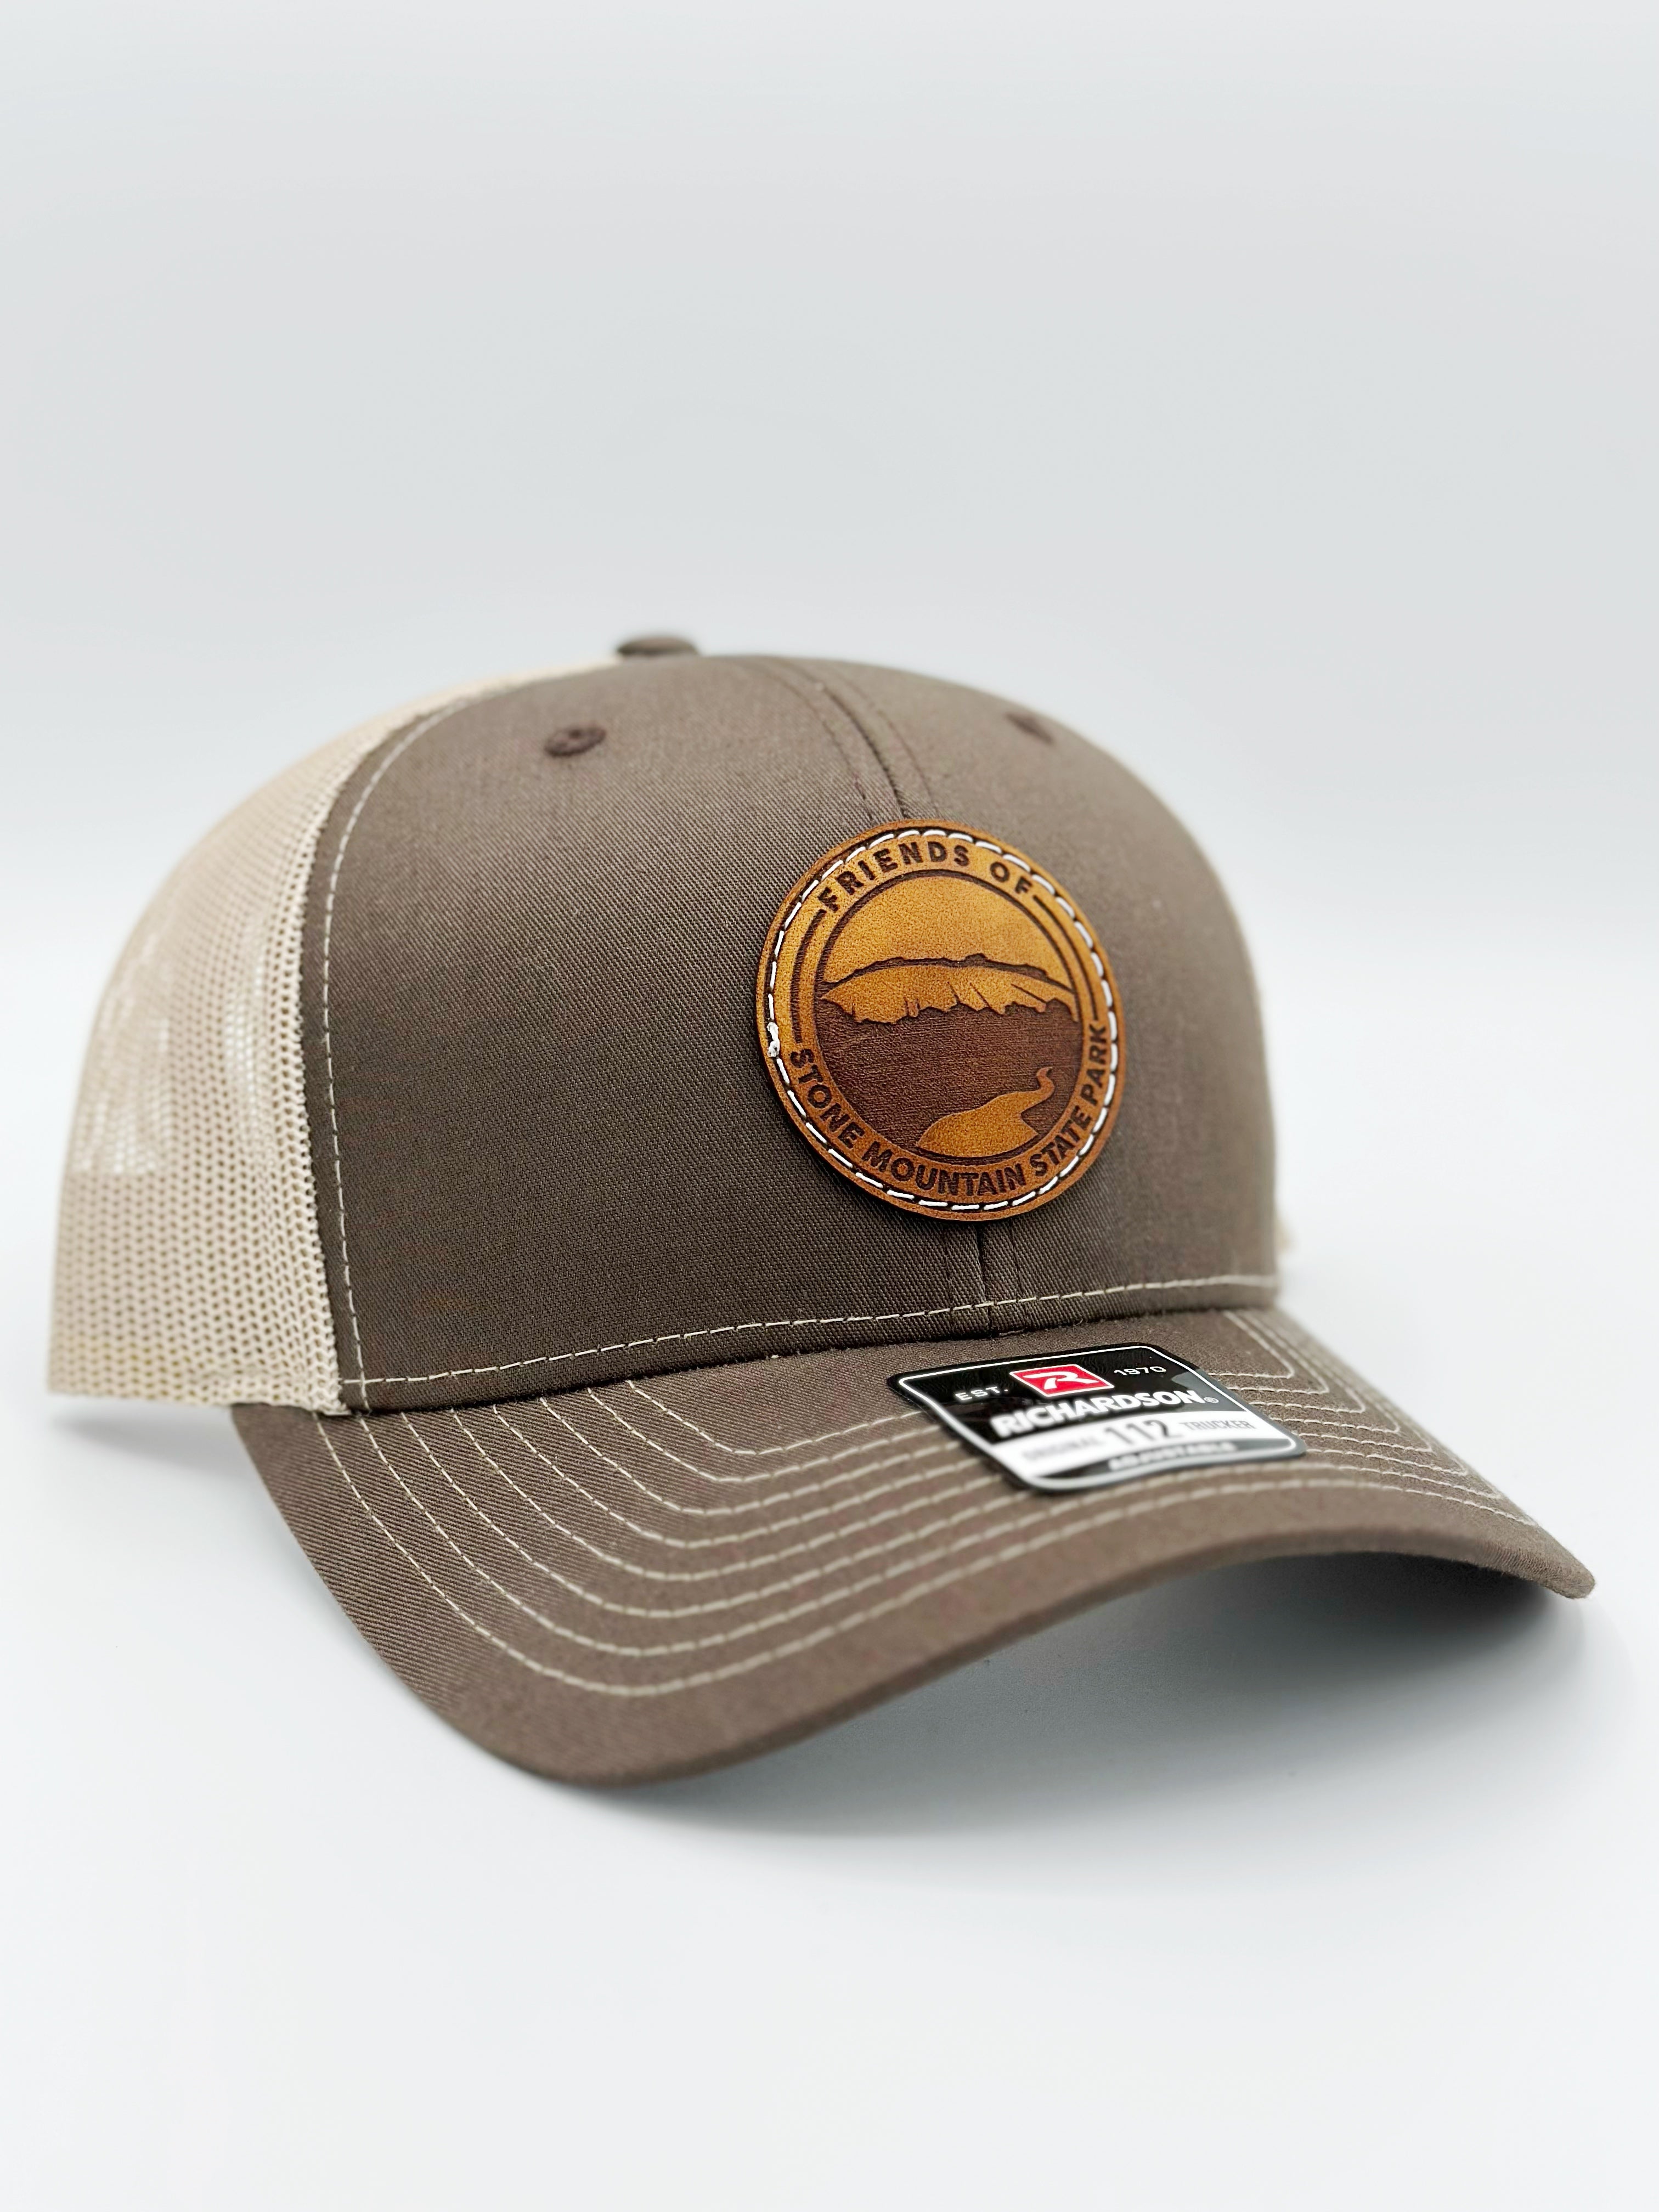 Friends of Stone Mountain Trucker Hat